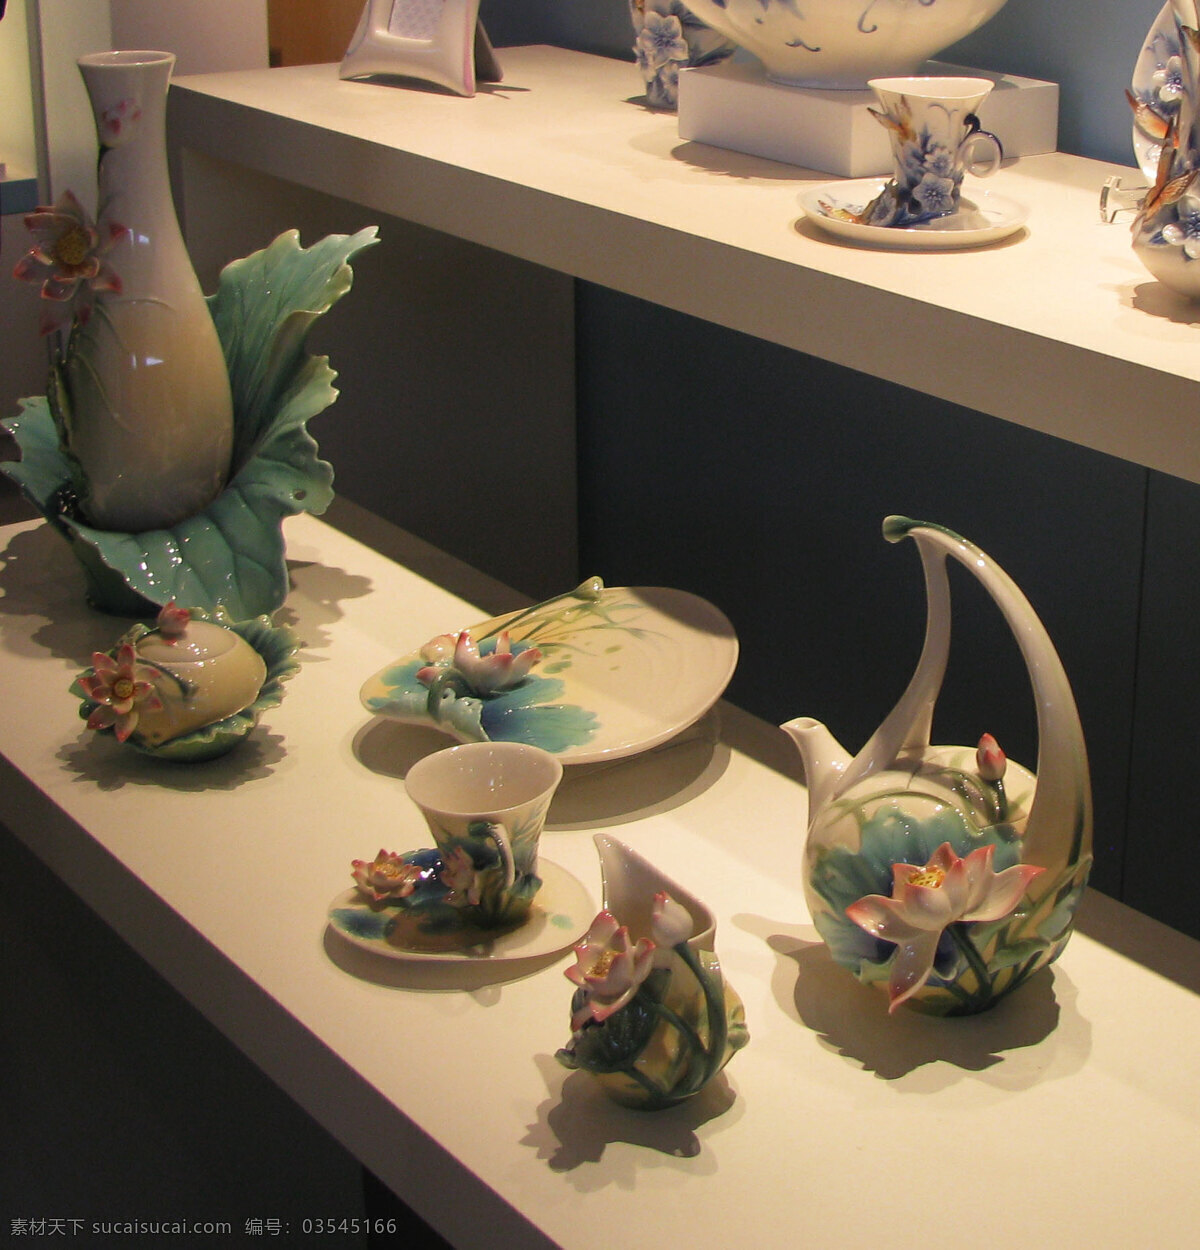 陶瓷 陶瓷艺术品 文化艺术 精美艺术品 陶瓷展览 台湾名品 装饰素材 展示设计